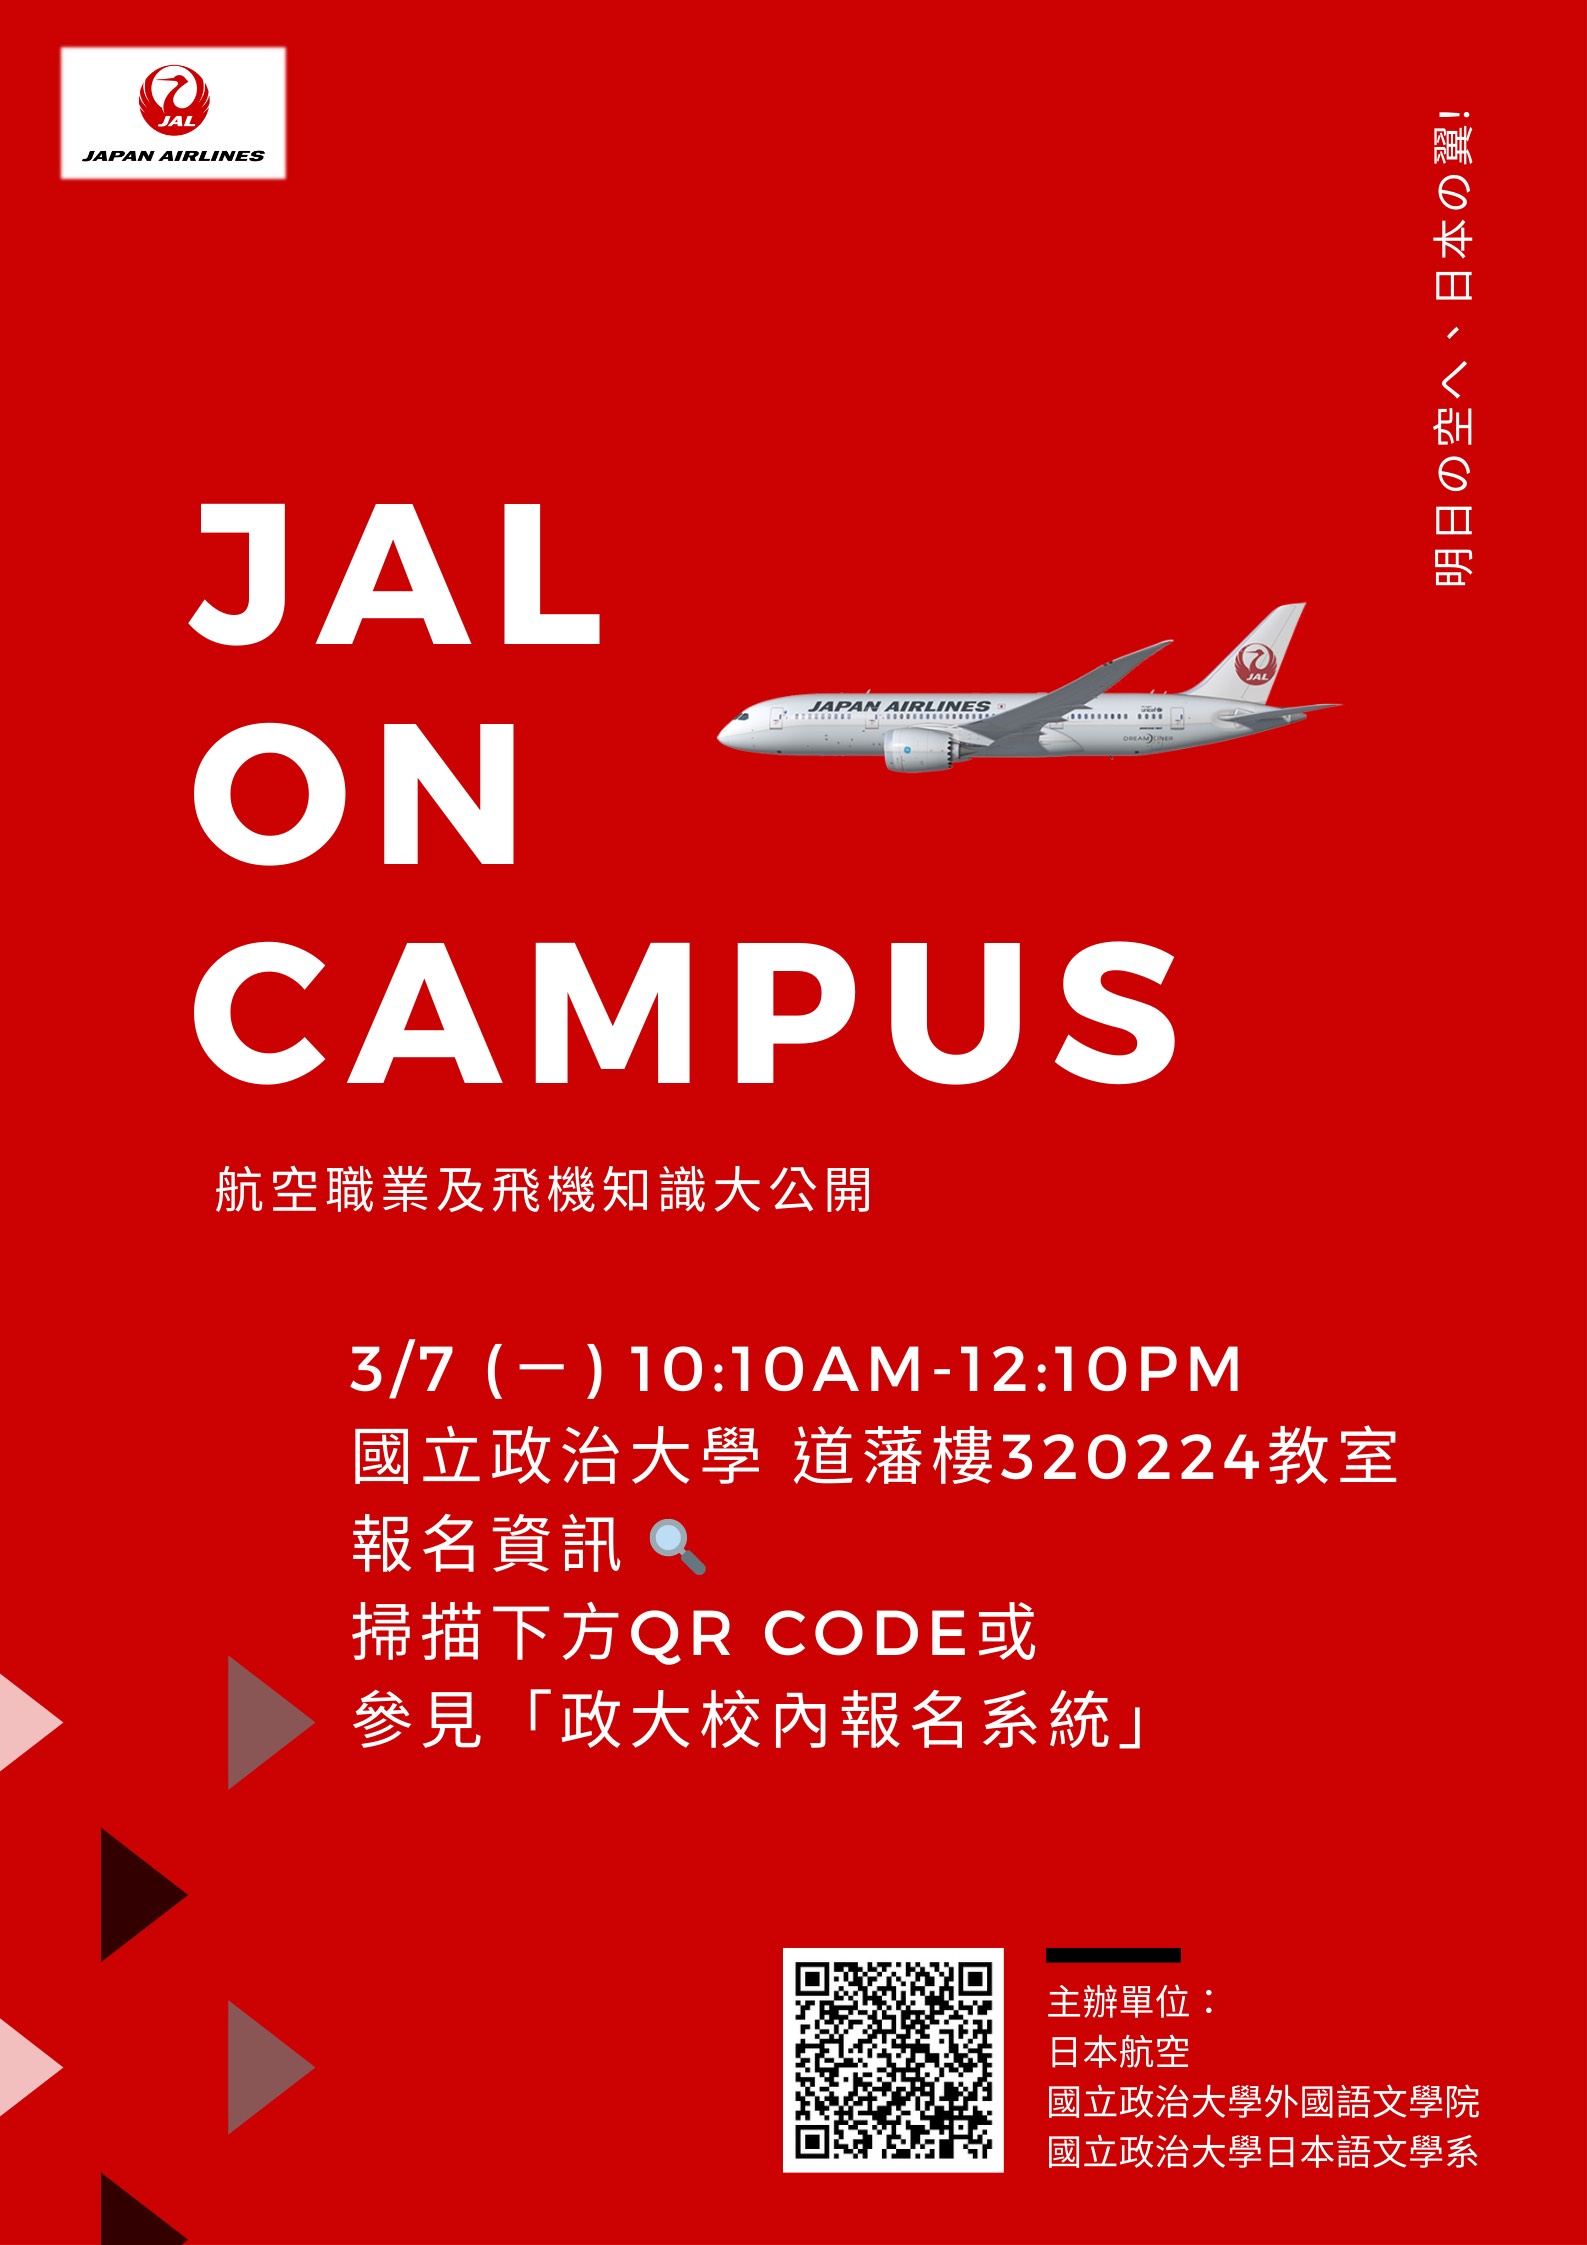 【演講】JAL ON CAMPUS 日航校園職涯講座之明日啟航